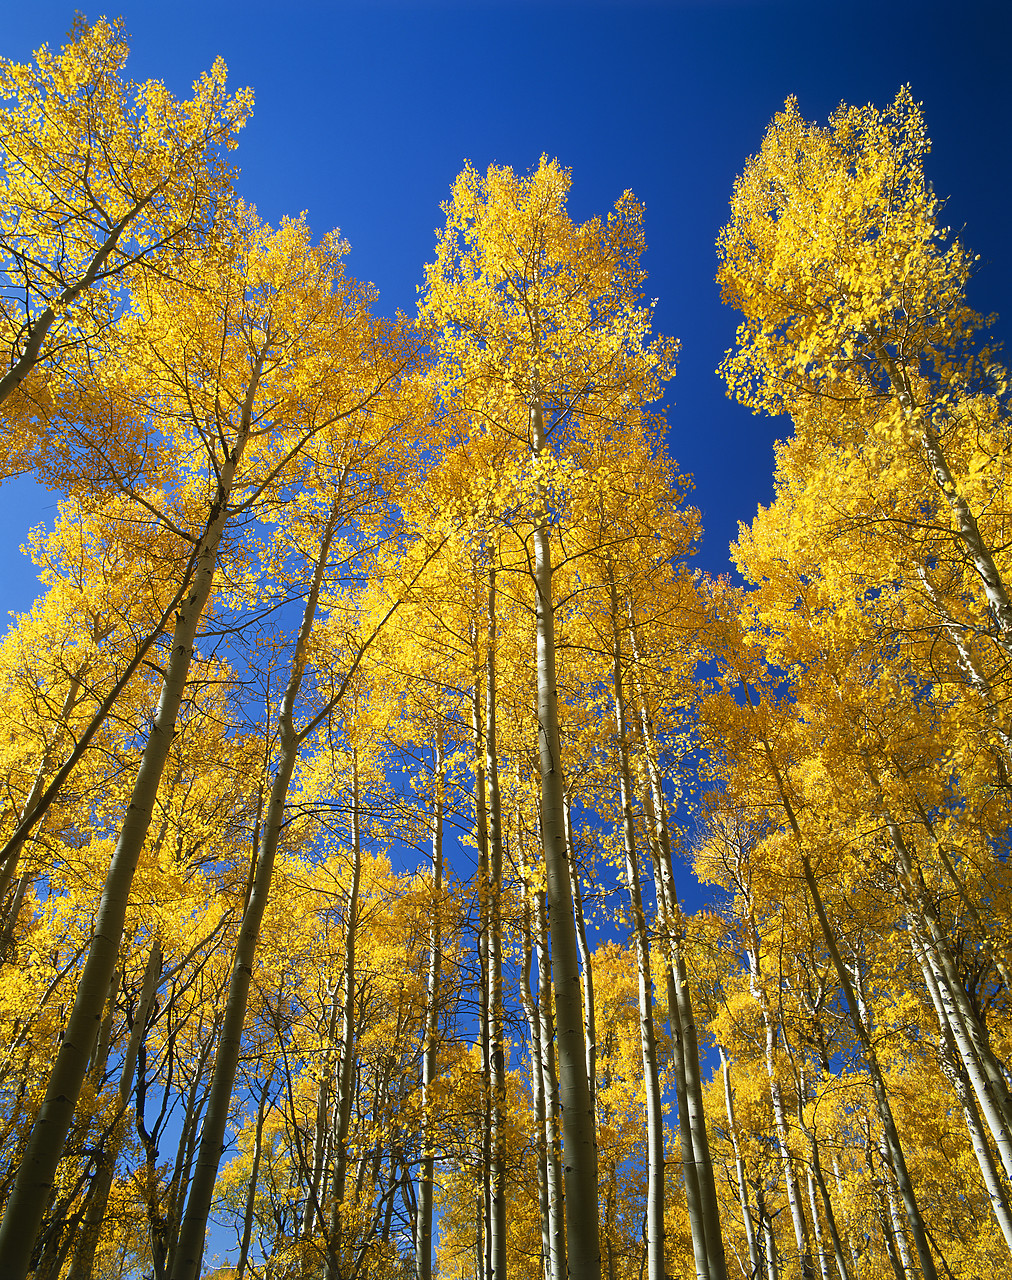 #990613-6 - Tower Aspen Trees in Autumn, Sangre de Cristo Mountains, Colorado, USA